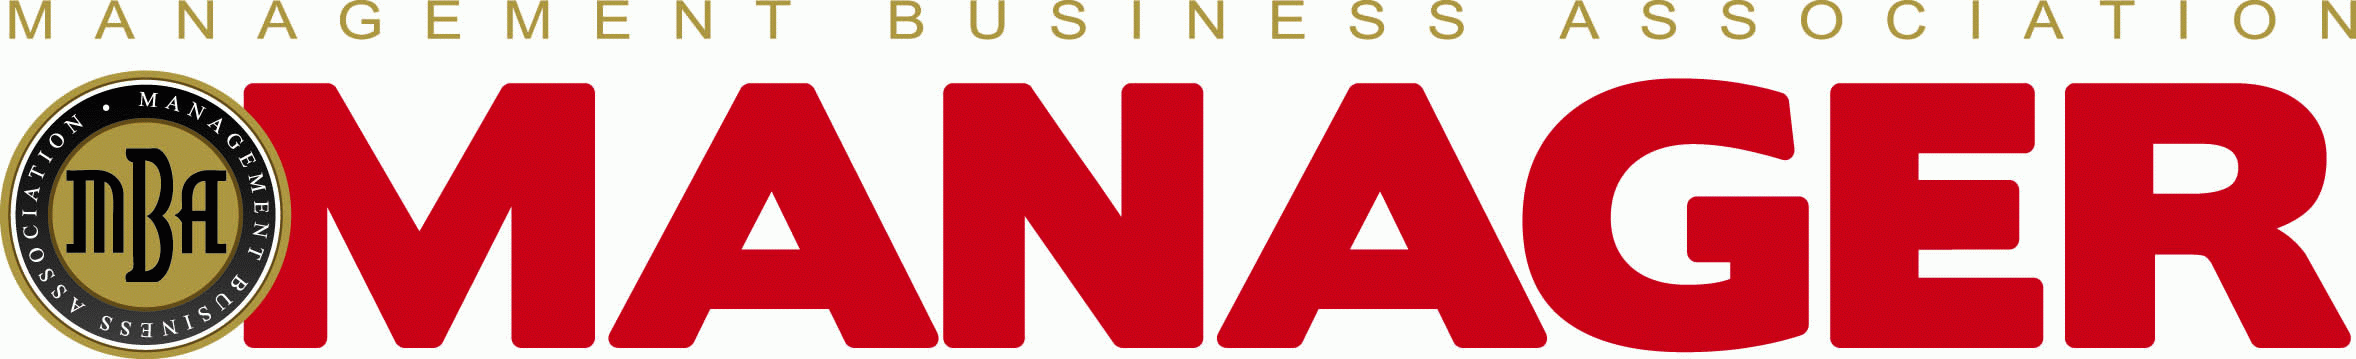 MANAGER_MBA_-logo.gif